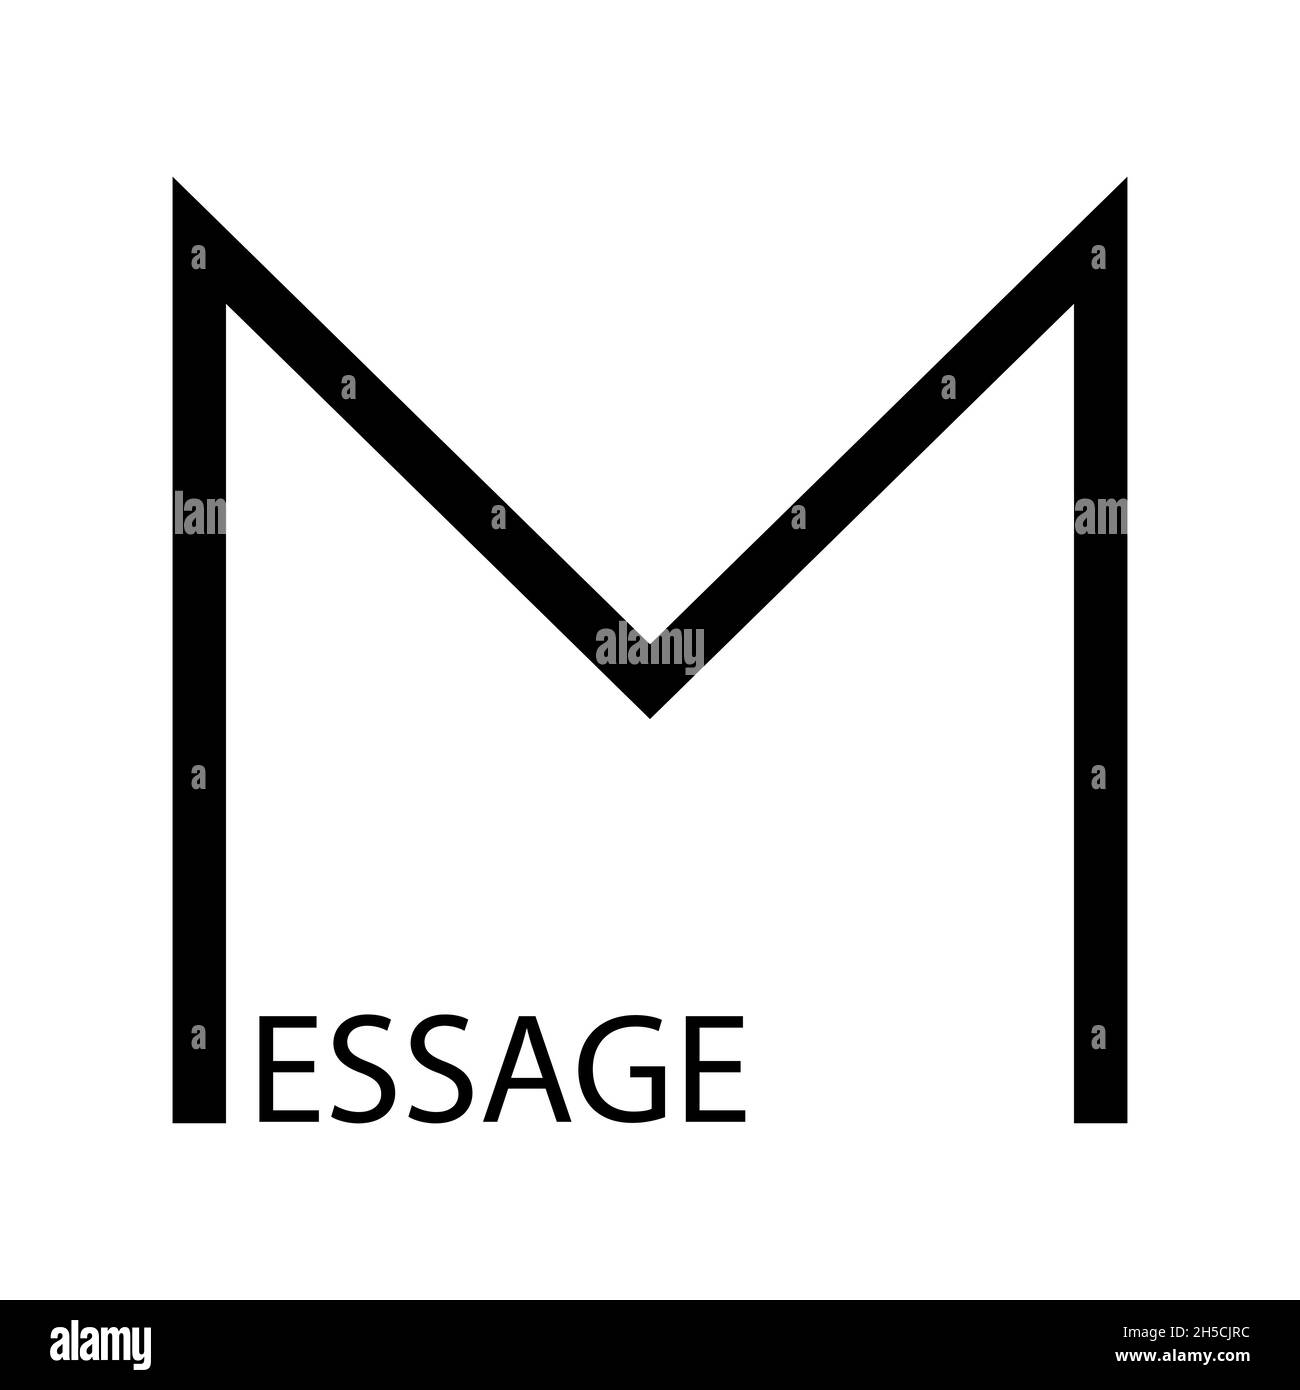 Meldungstext in Form eines Briefes, Symbol für das Senden von Kommunikation, flache, minimalistische Vektordarstellung Stock Vektor